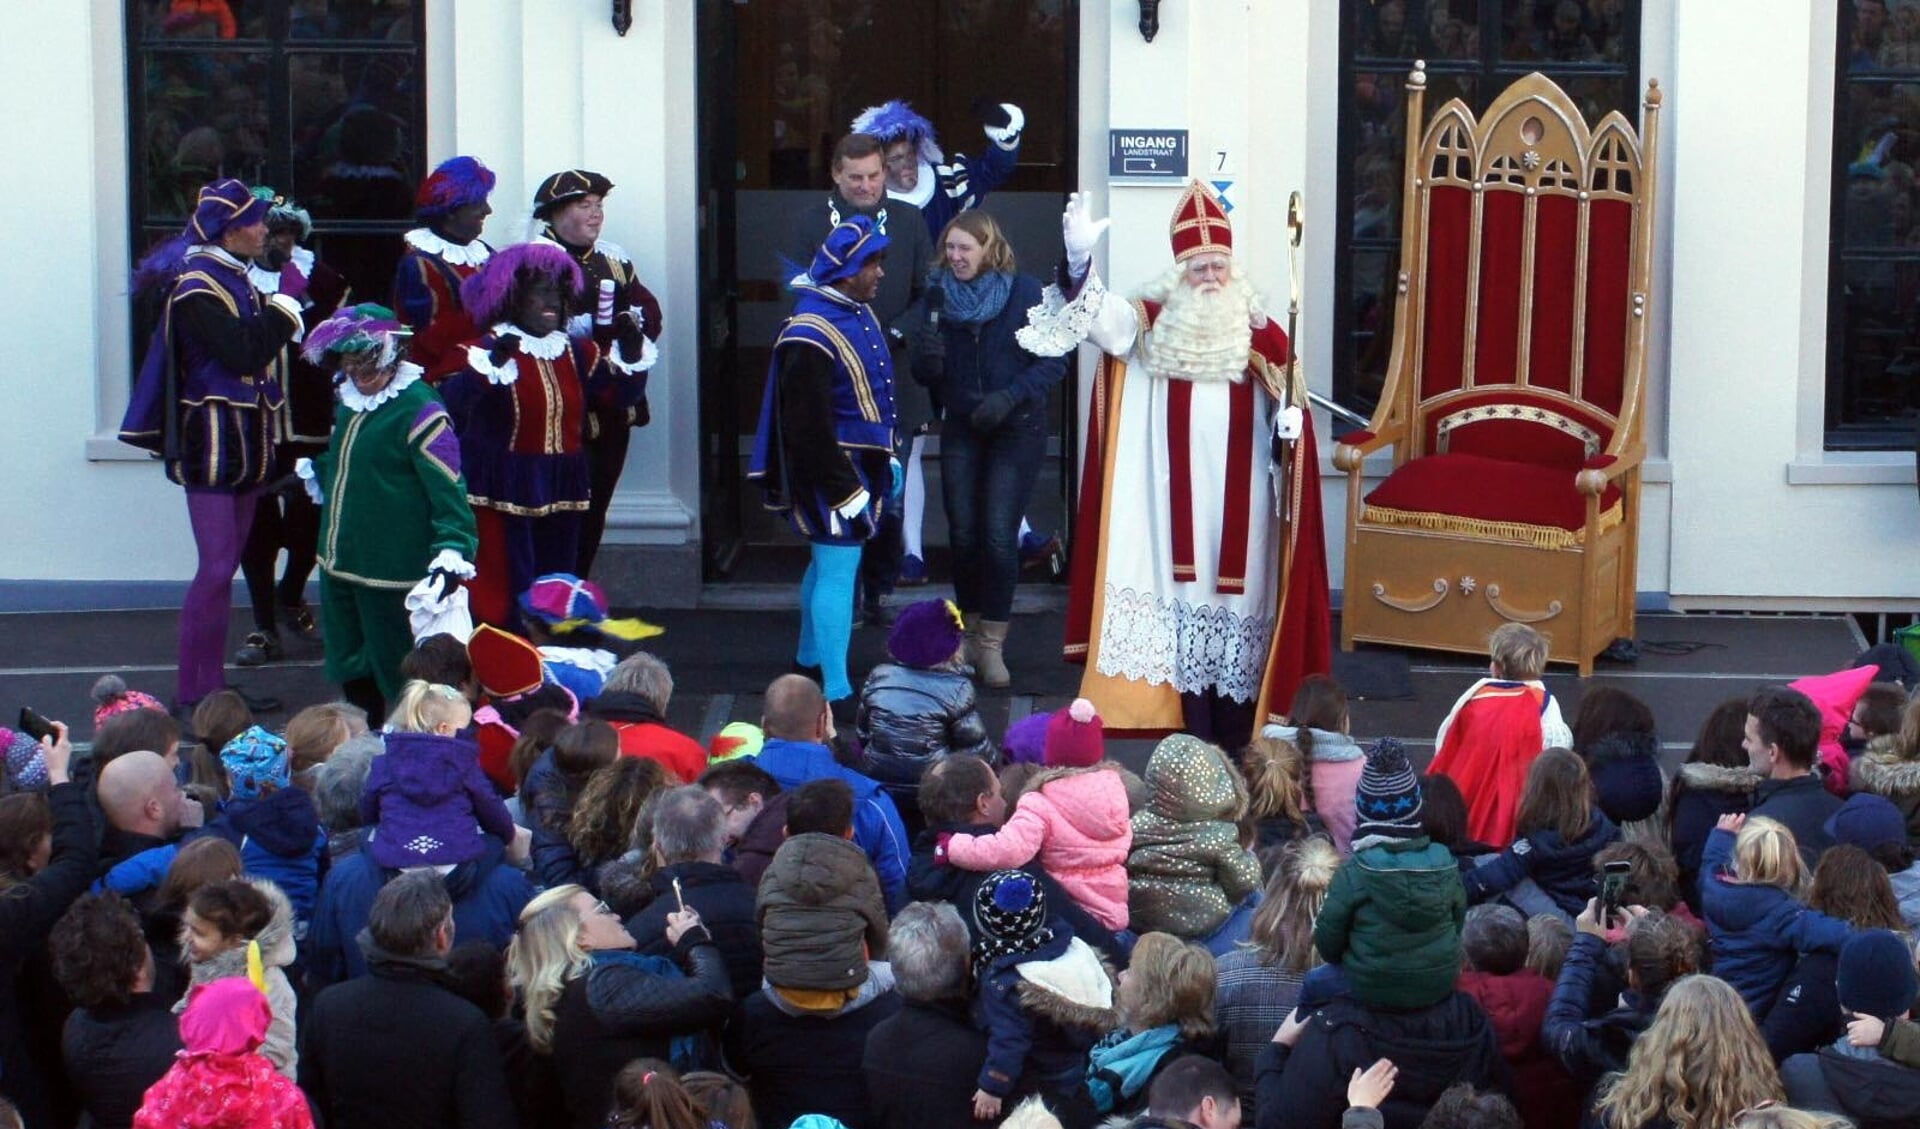 Sint Nicolaas wordt welkom geheten op het bordes van het gemeentehuis. Foto: PR